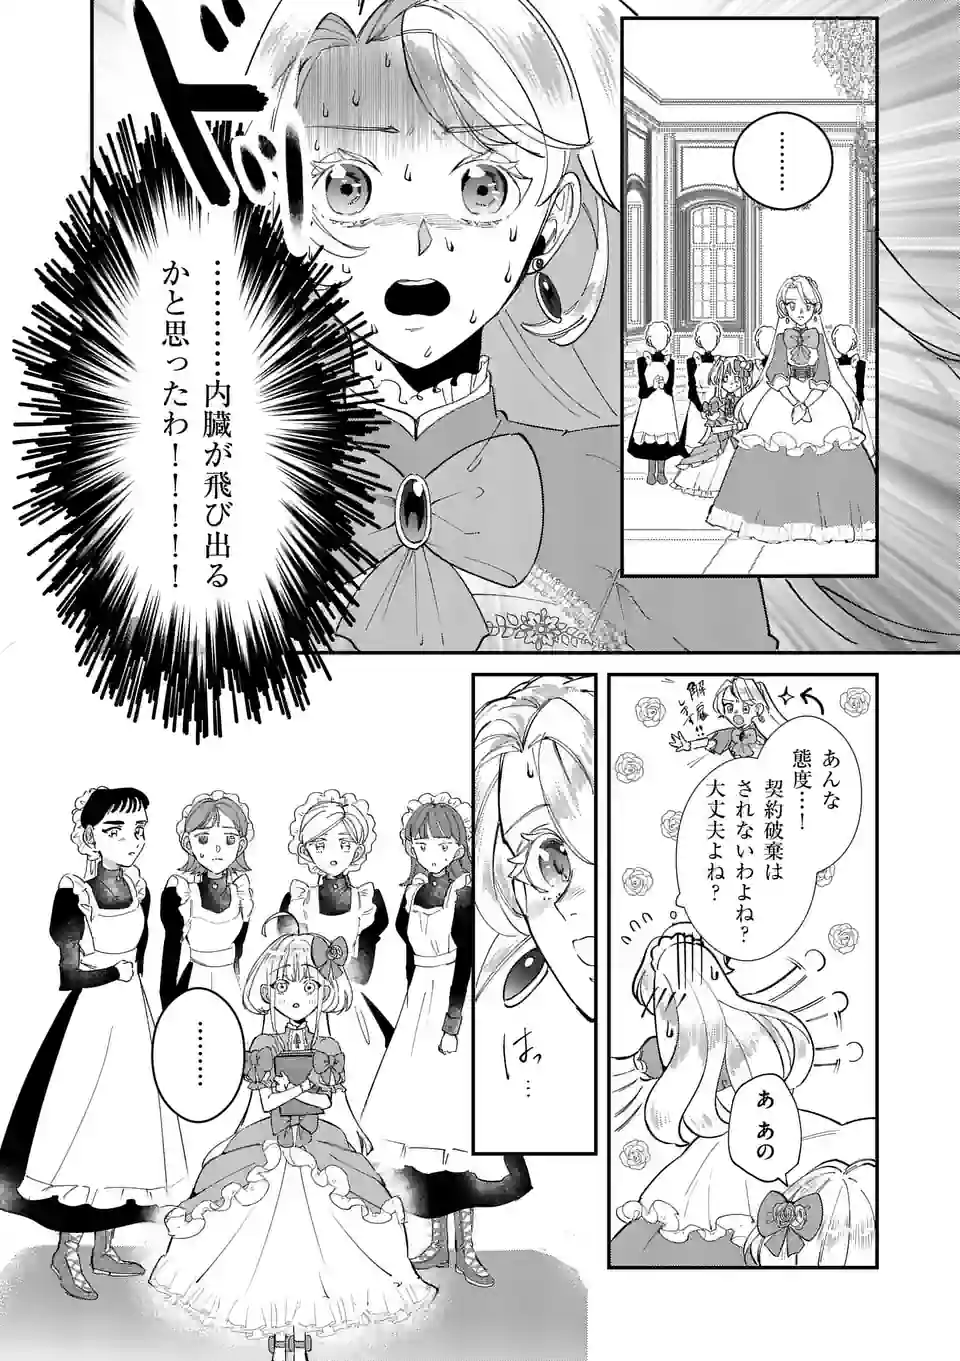 Gijou ga Akuyaku Reijou to shite Hametsu suru Koto wo Shitta no de, Mechakucha Aishimasu - Chapter 2.2 - Page 3